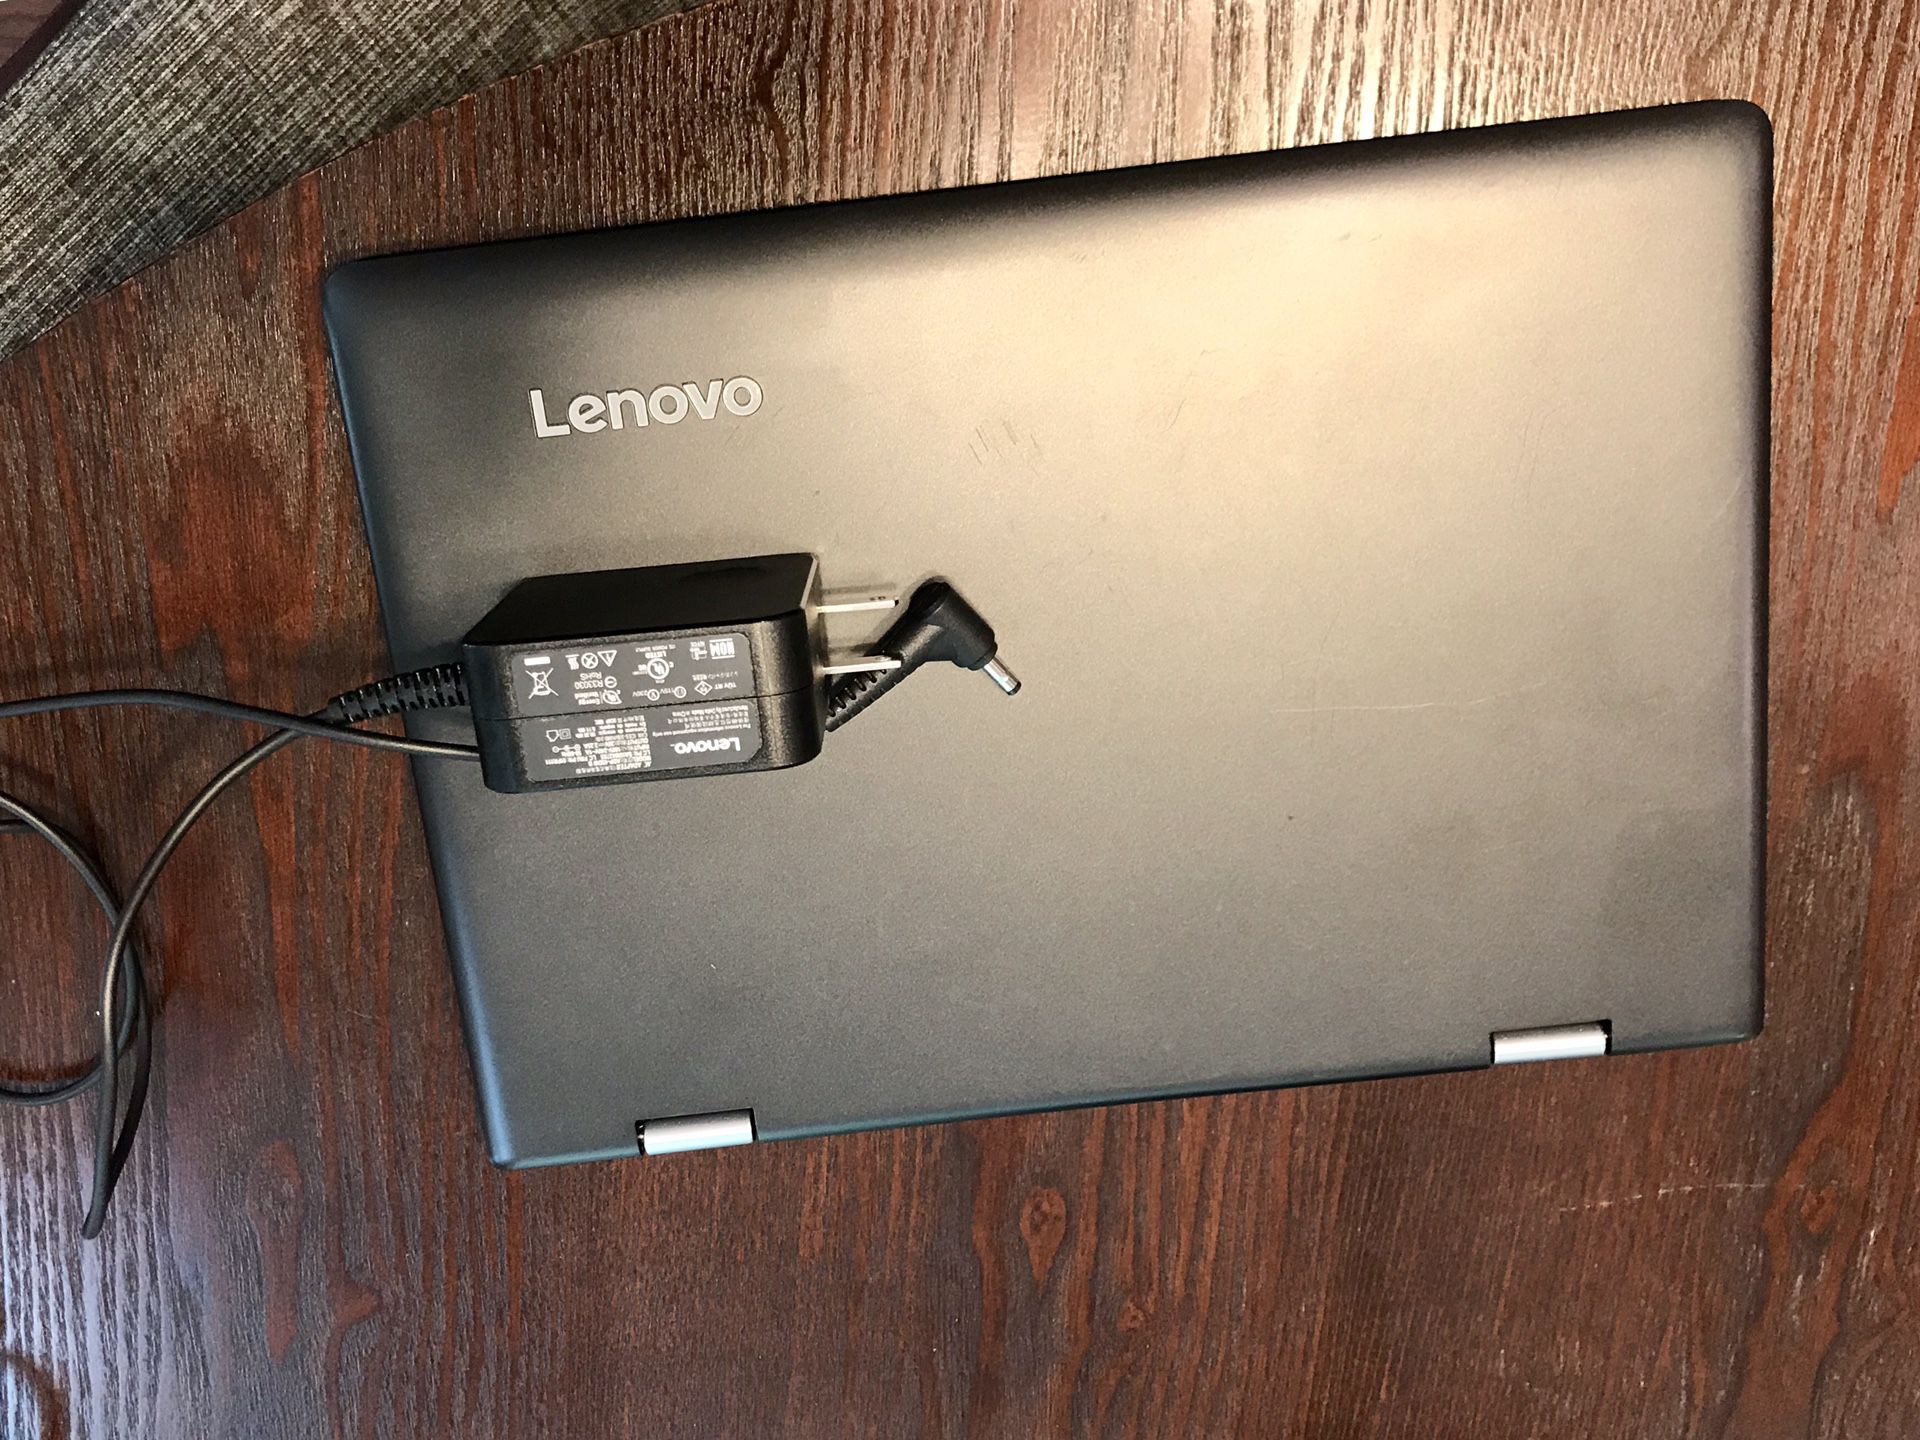 Lenovo touch screen